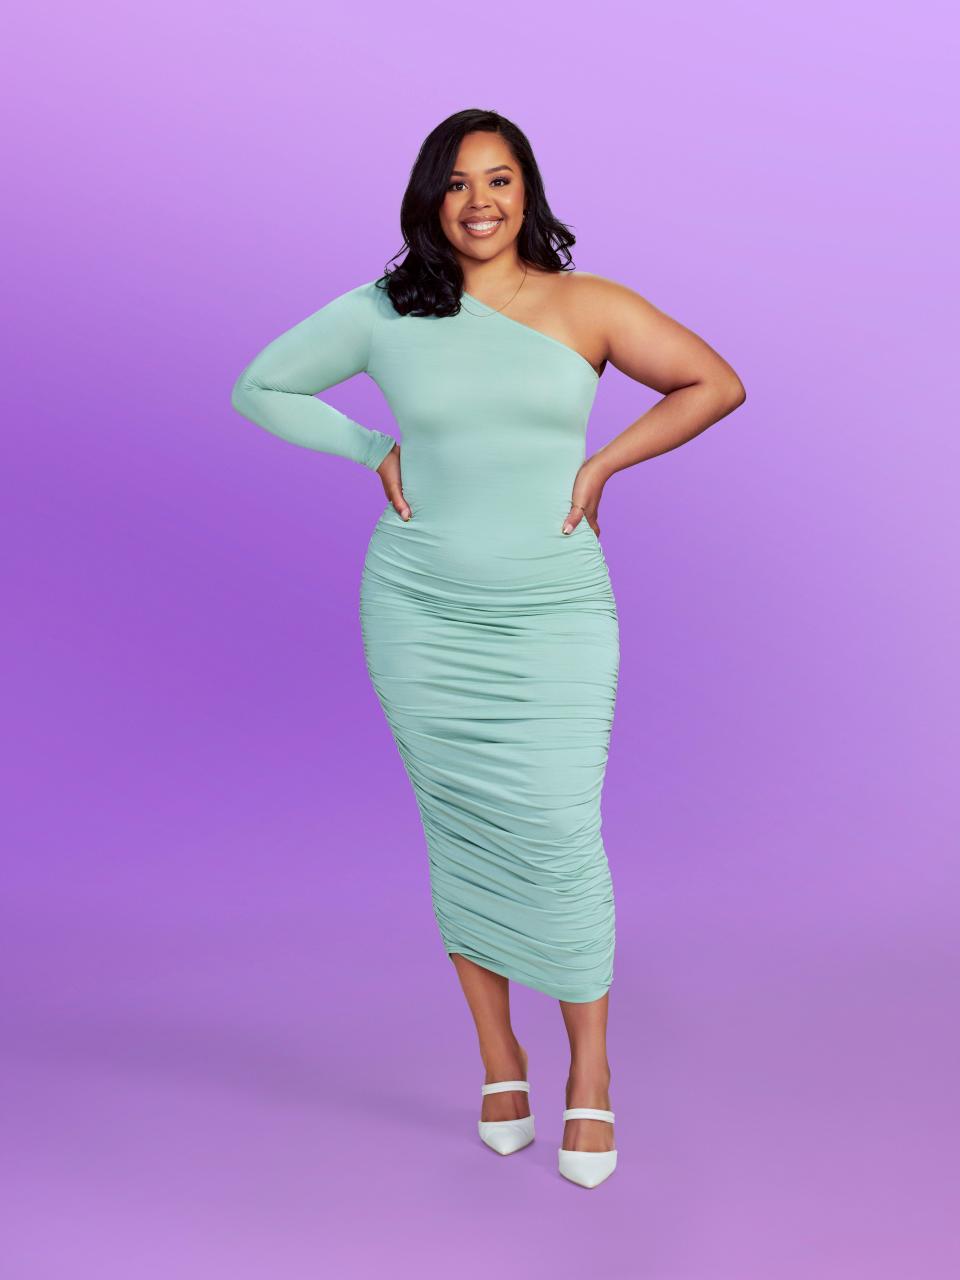 "Love Is Blind" season 6 contestant Alejandra wearing a blue dress